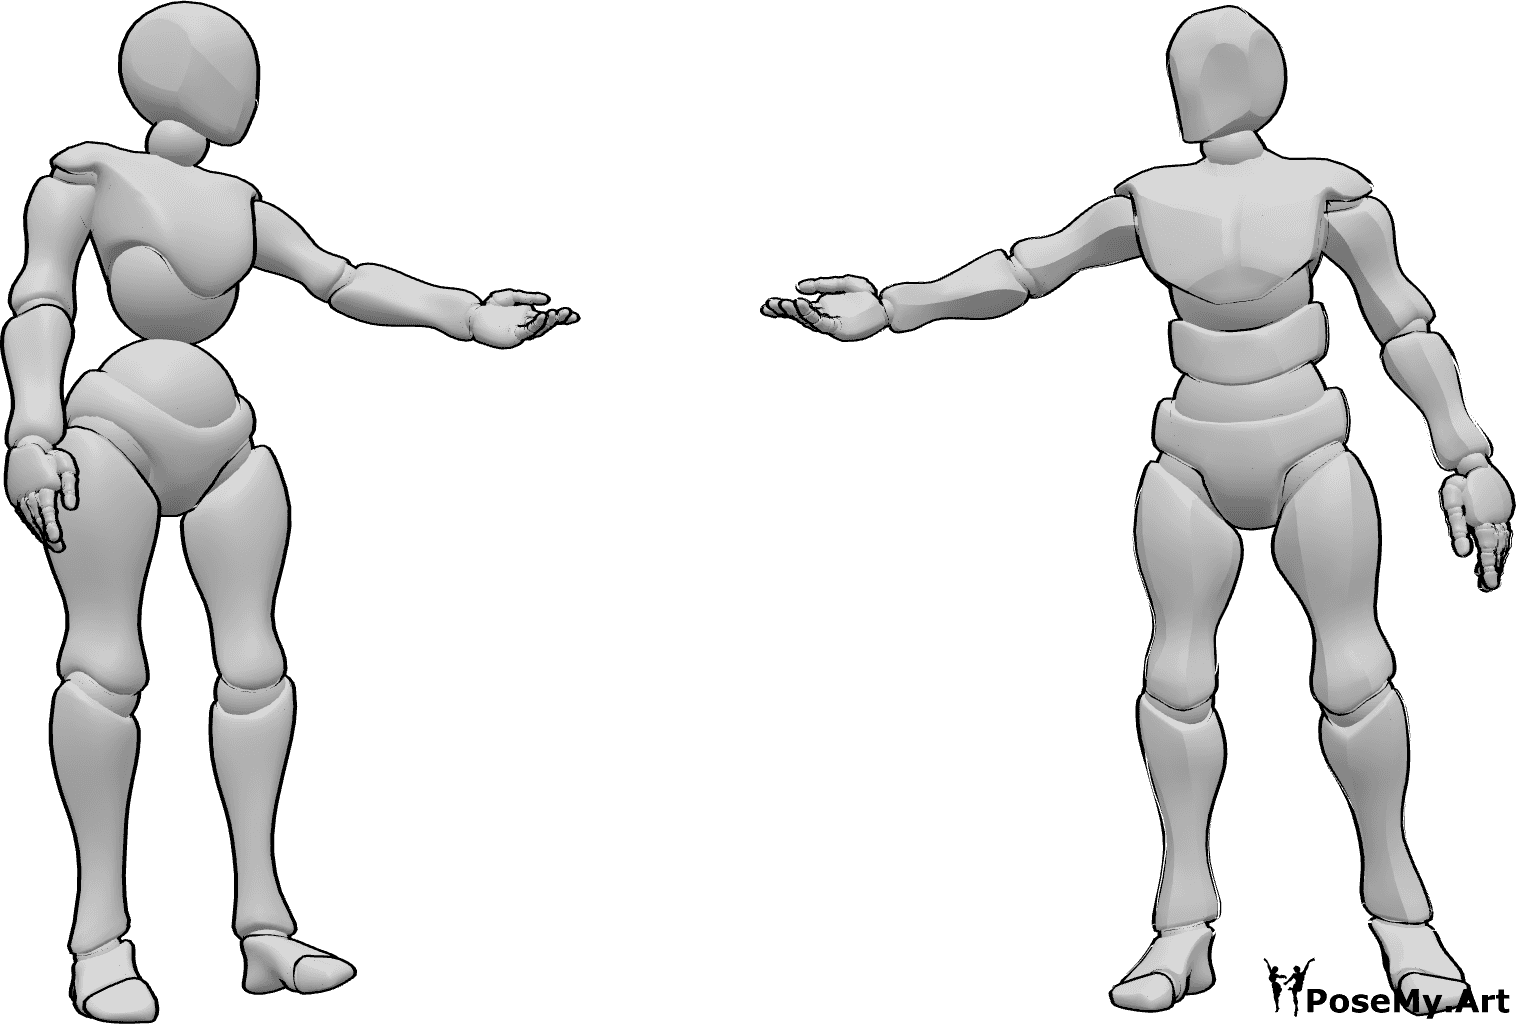 Posen-Referenz- Weibliche und männliche Pose - Frau und Mann stehen, schauen sich an und strecken sich die Hände entgegen